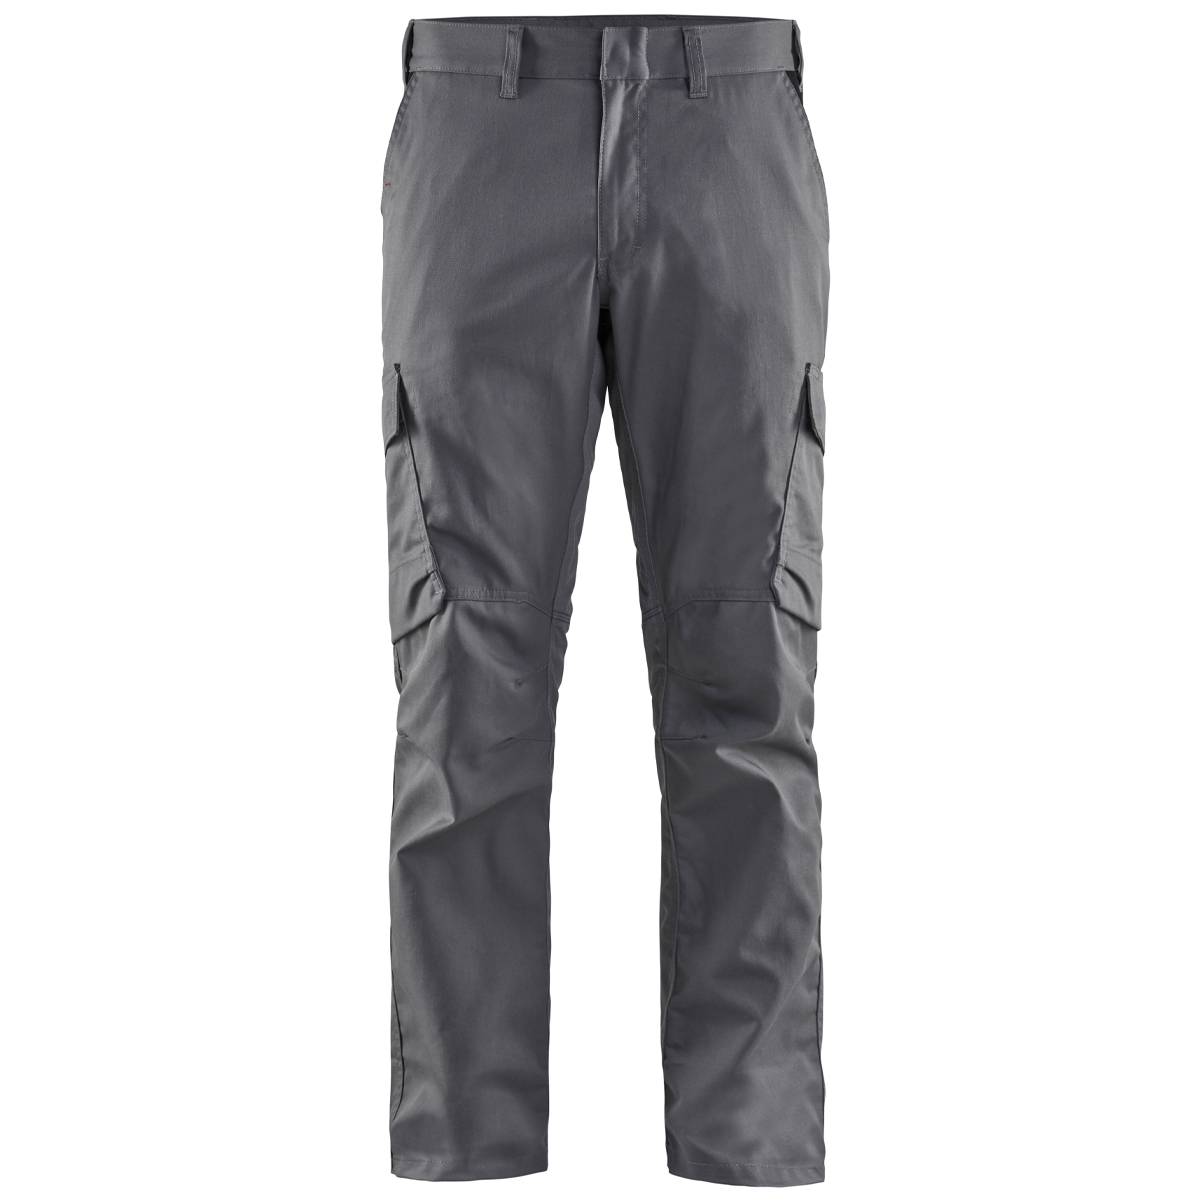 Blakläder industrial work trousers with stretch